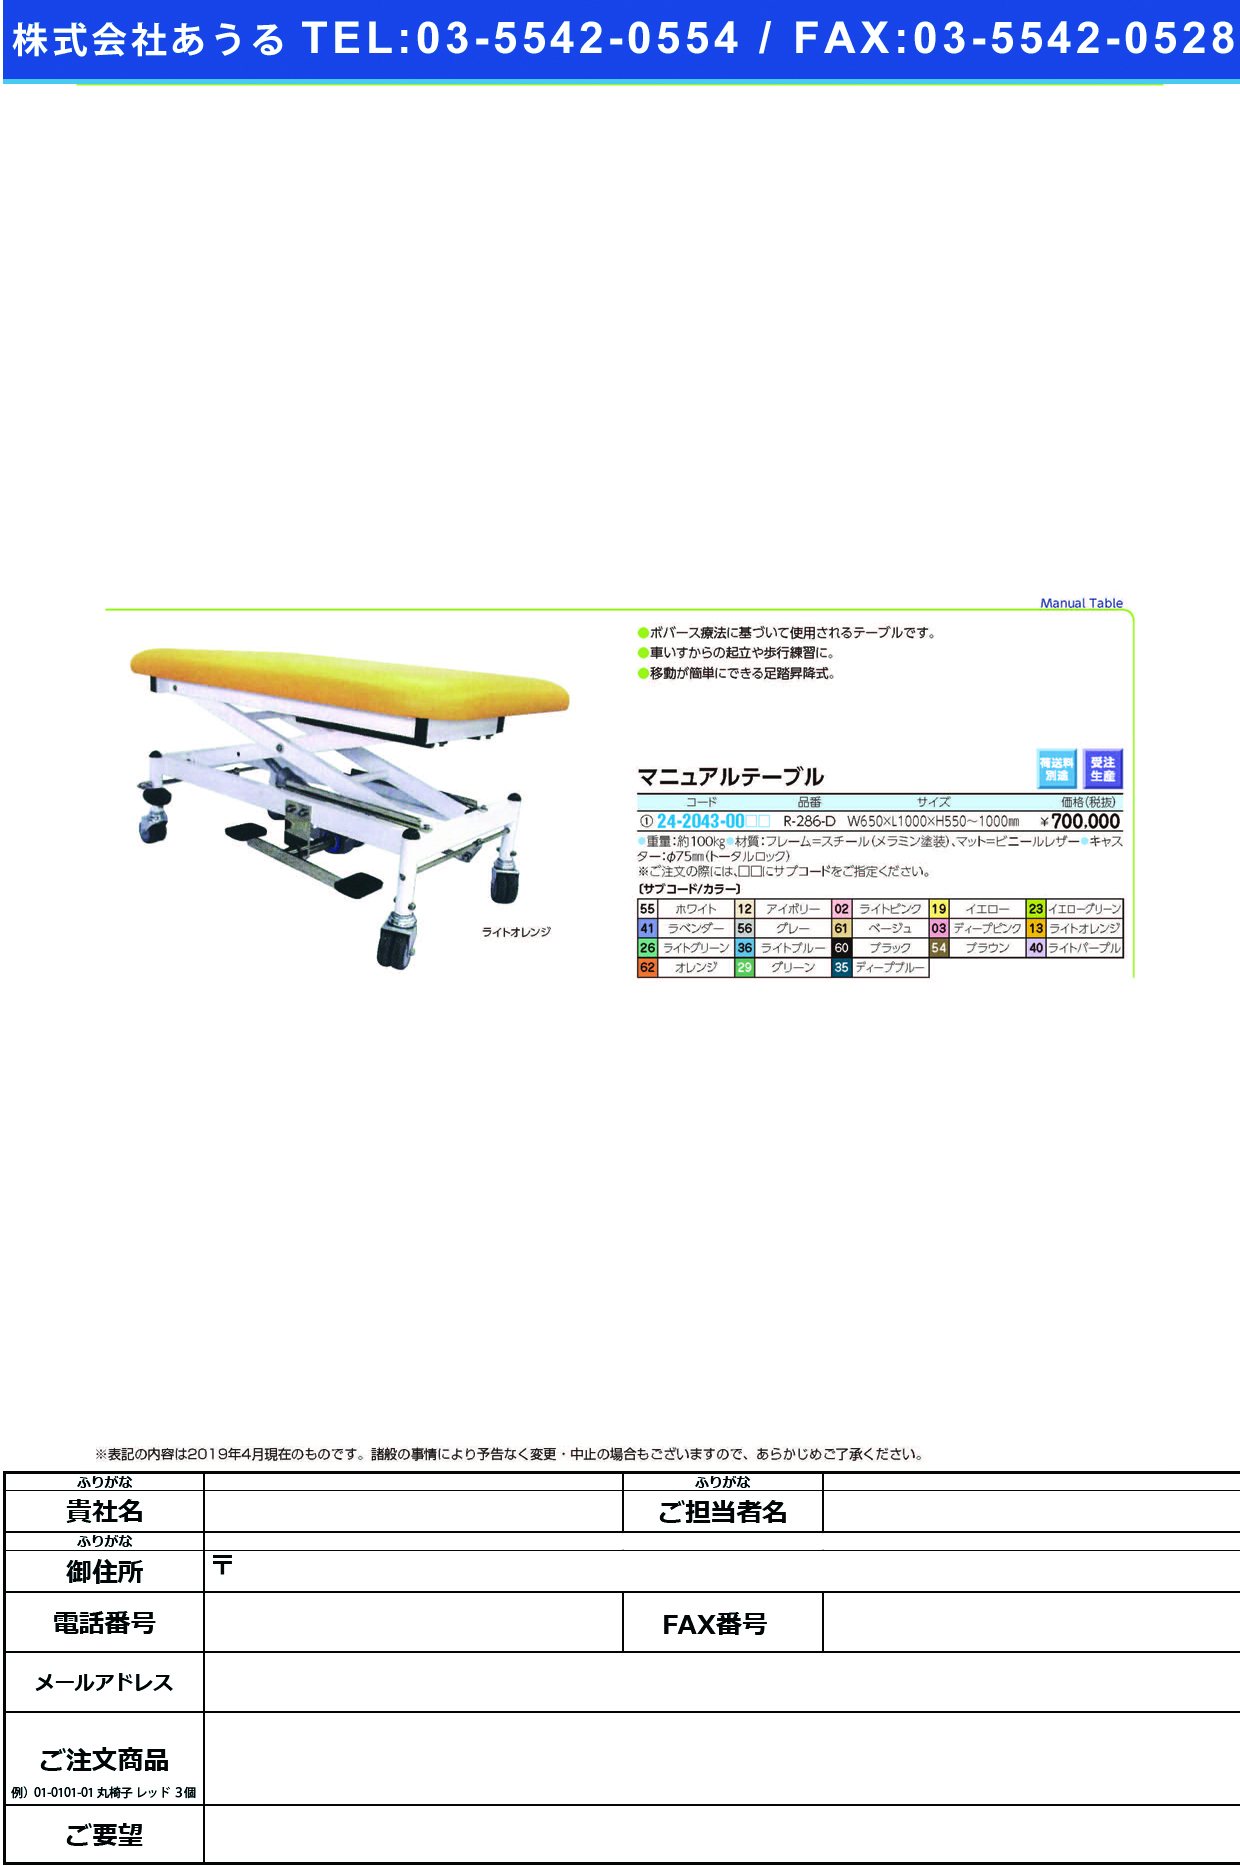 (24-2043-00)マニュアルテーブル R-286-D ﾏﾆｭｱﾙﾃｰﾌﾞﾙ アイボリー【1台単位】【2019年カタログ商品】